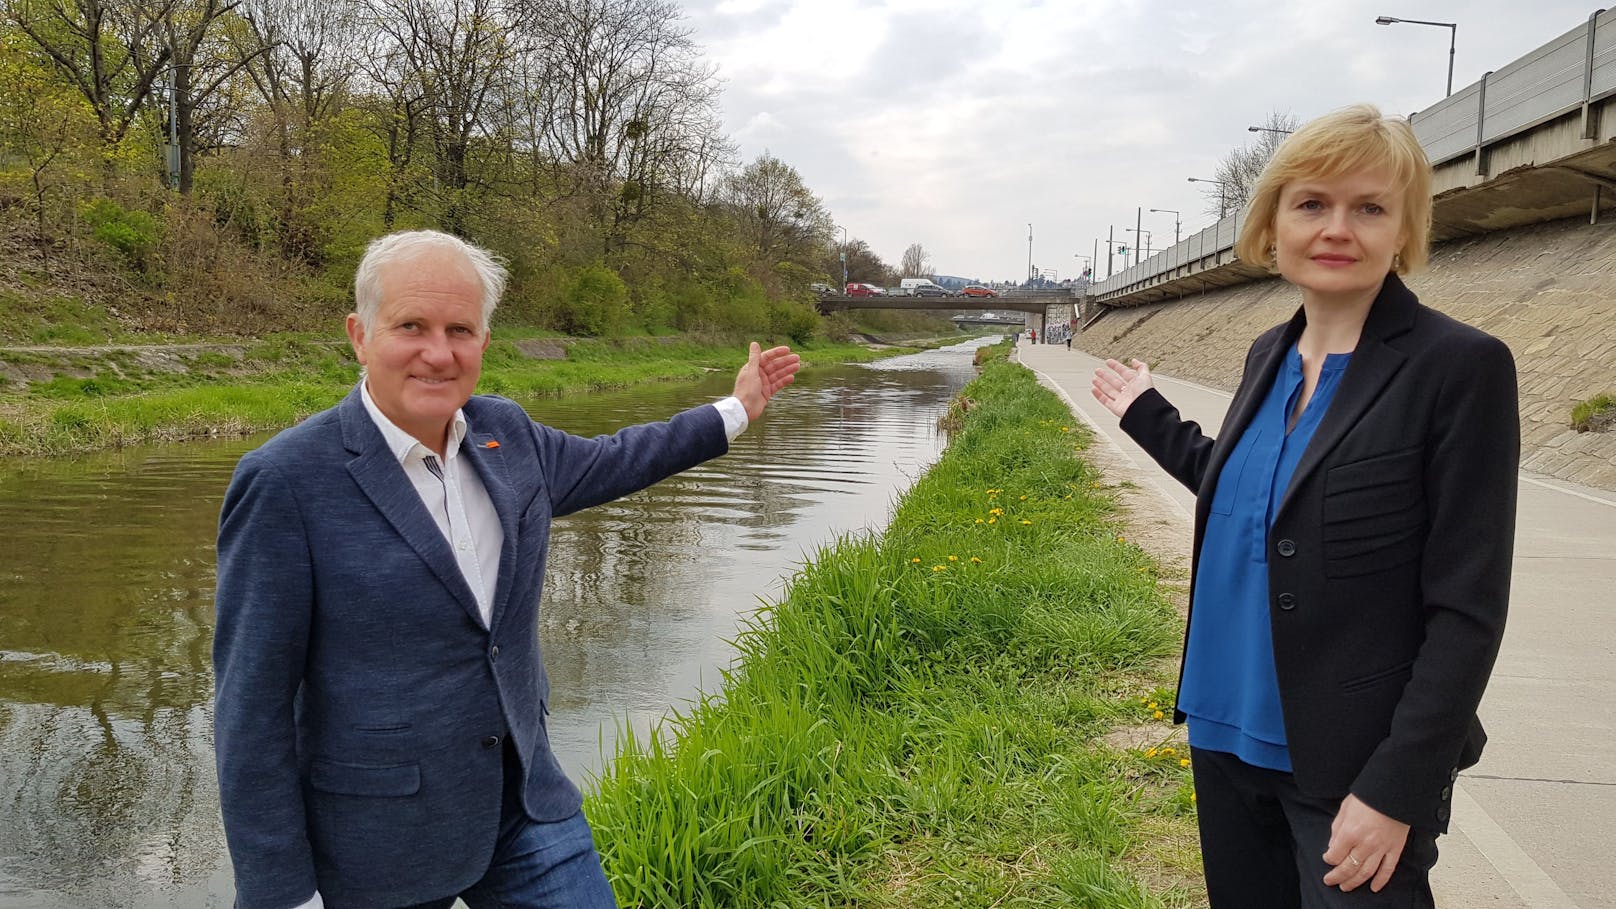 Bezirksvorsteherin Silke Kobald und der Hietzinger Gemeinderat Michael Gorlitzer (beide ÖVP) fordern grundsätzliche Änderungen am Projekt Westausfahrt, um den Grünraum im Wiental zu erhalten.